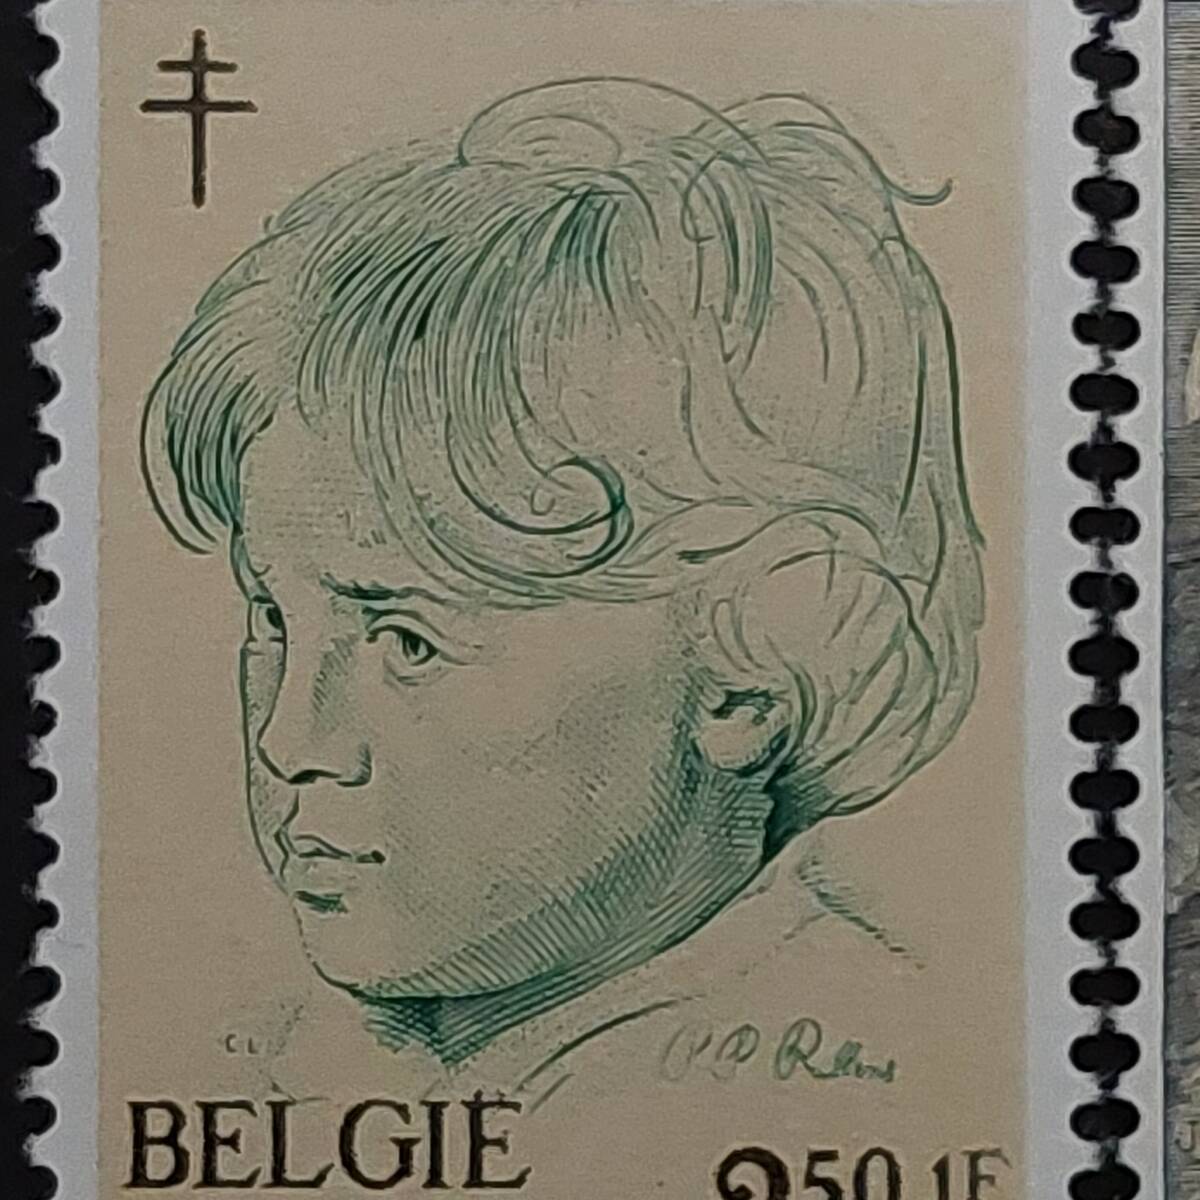 J507 ベルギー切手「バロック期のフランドルの画家『ルーベンスの子供・天使の絵画切手』(結核予防寄付金付き)6種完」1963年発行 未使用の画像5